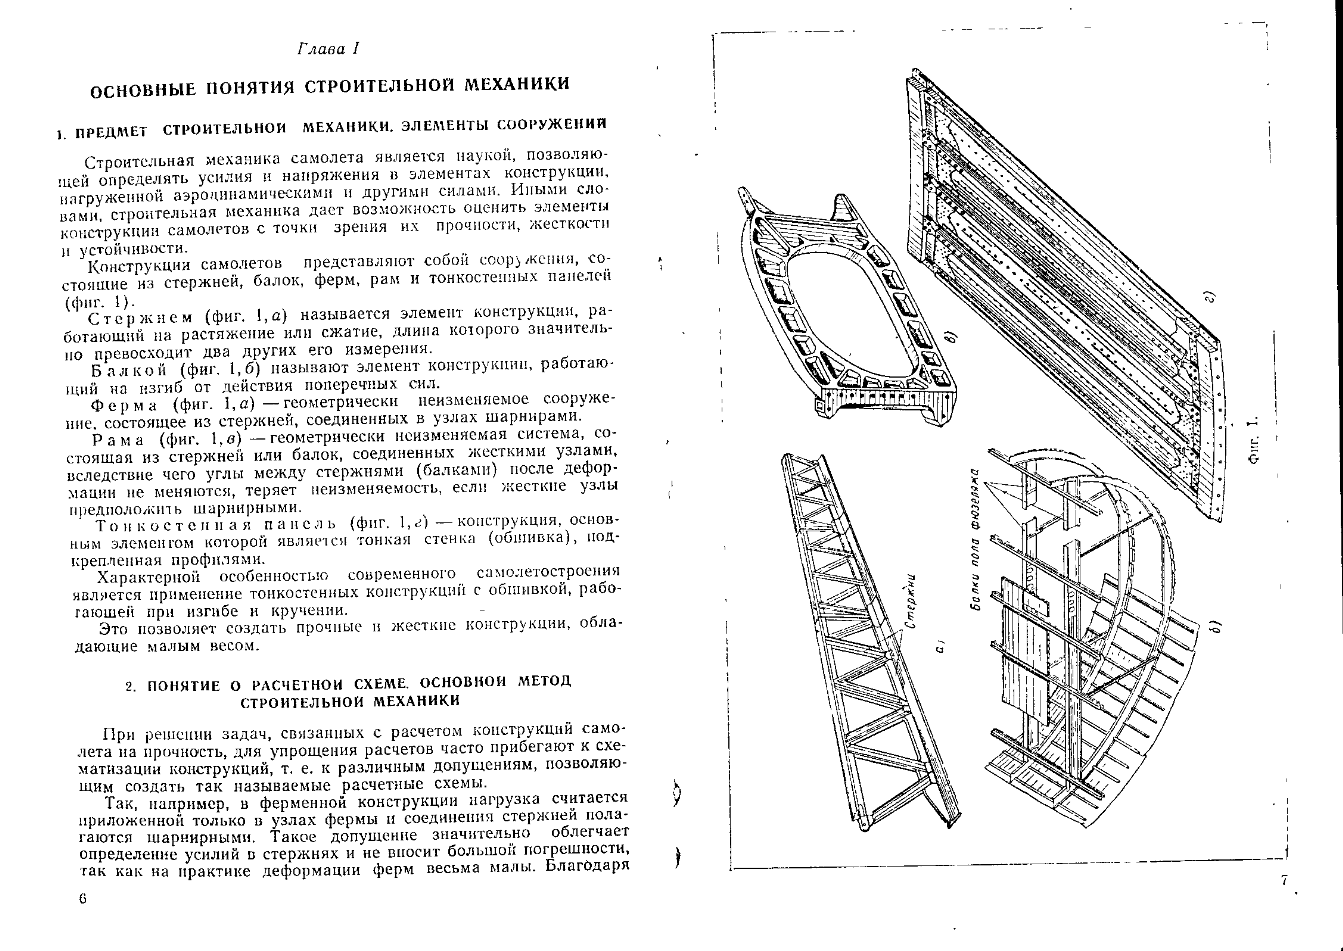 Курс конструкции самолетов. 1965